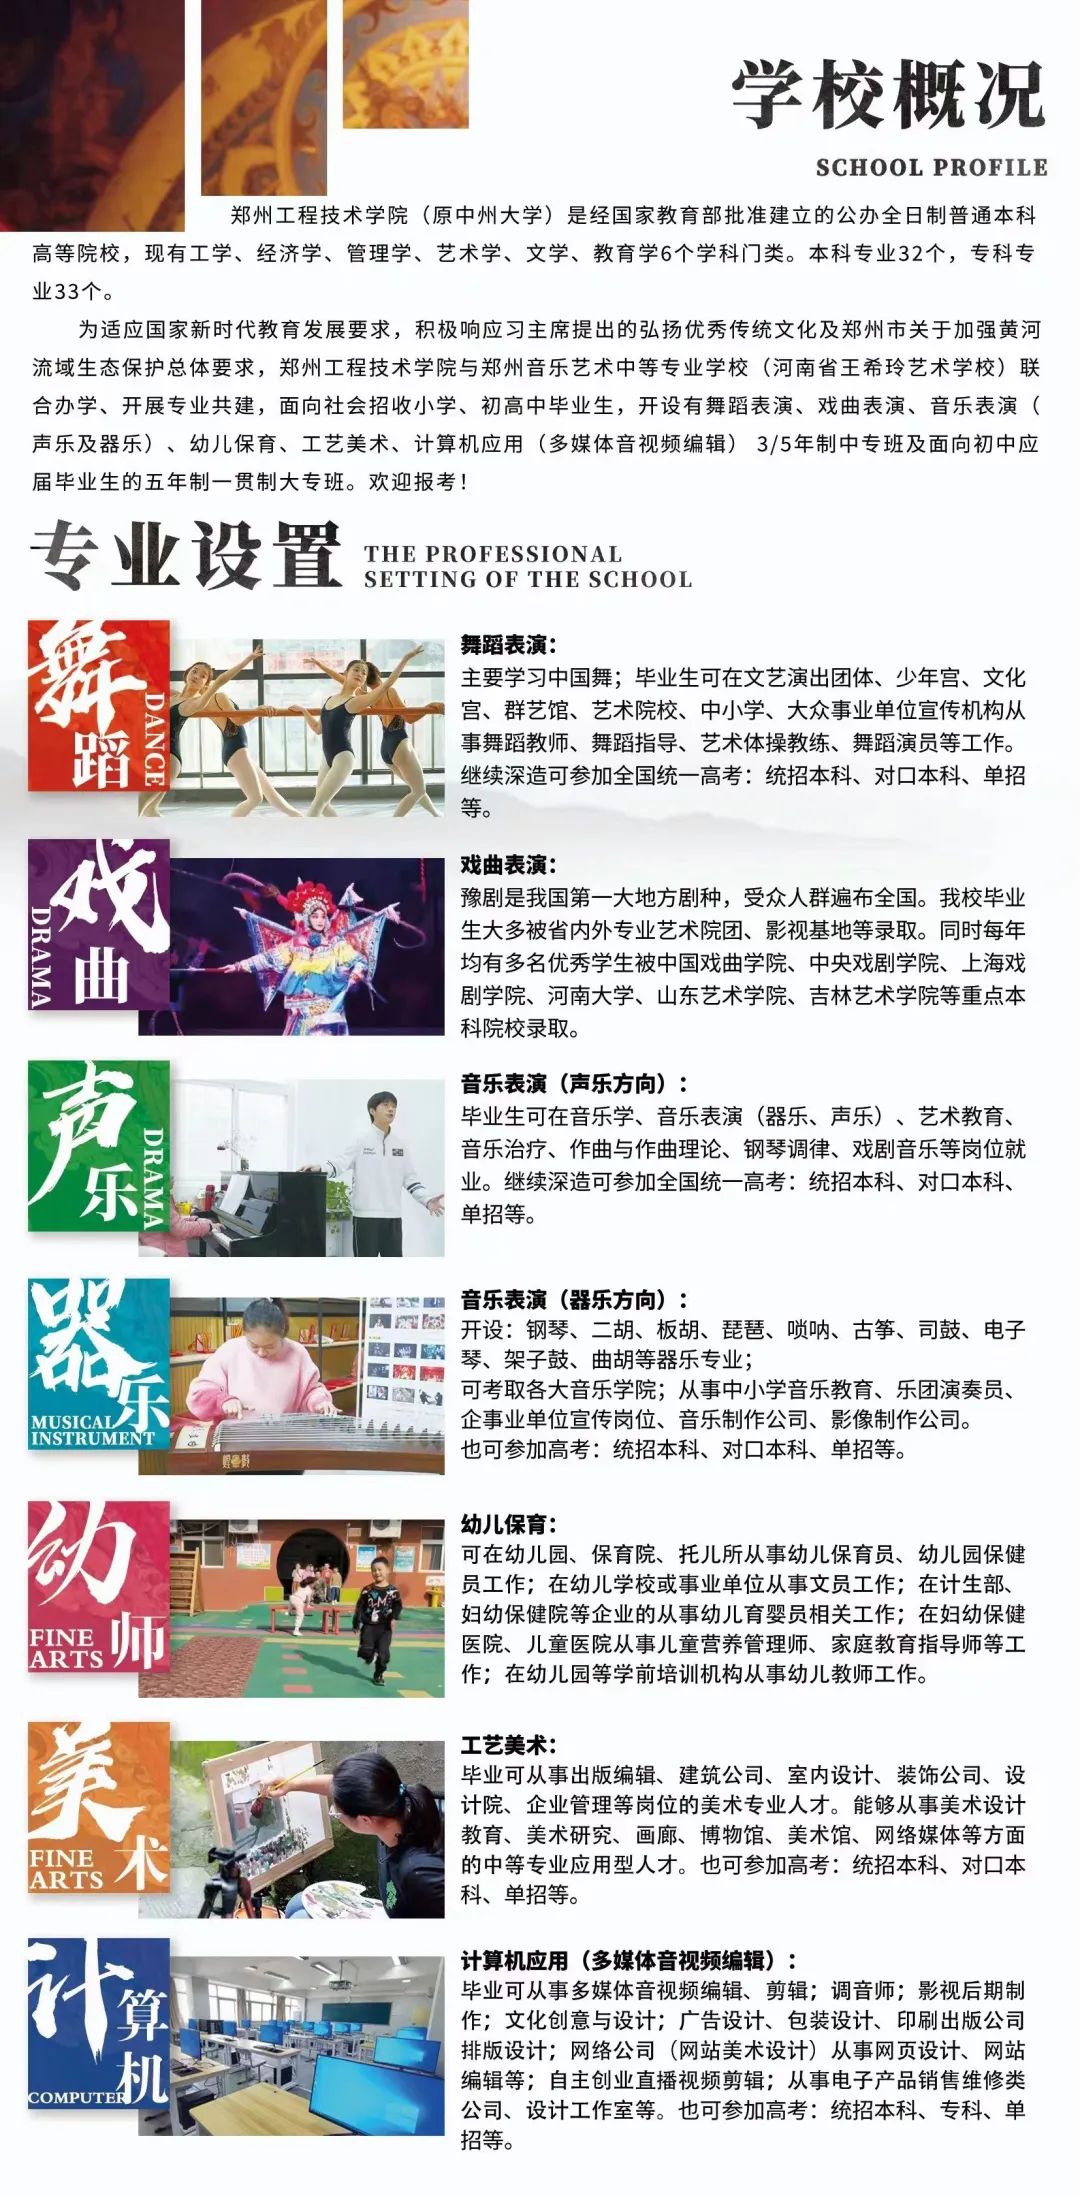 郑州音乐艺术中等专业学校与河南广播电视台全媒体签约“战略合作伙伴”！ (http://www.xifumi.com/) 校内新闻 第10张